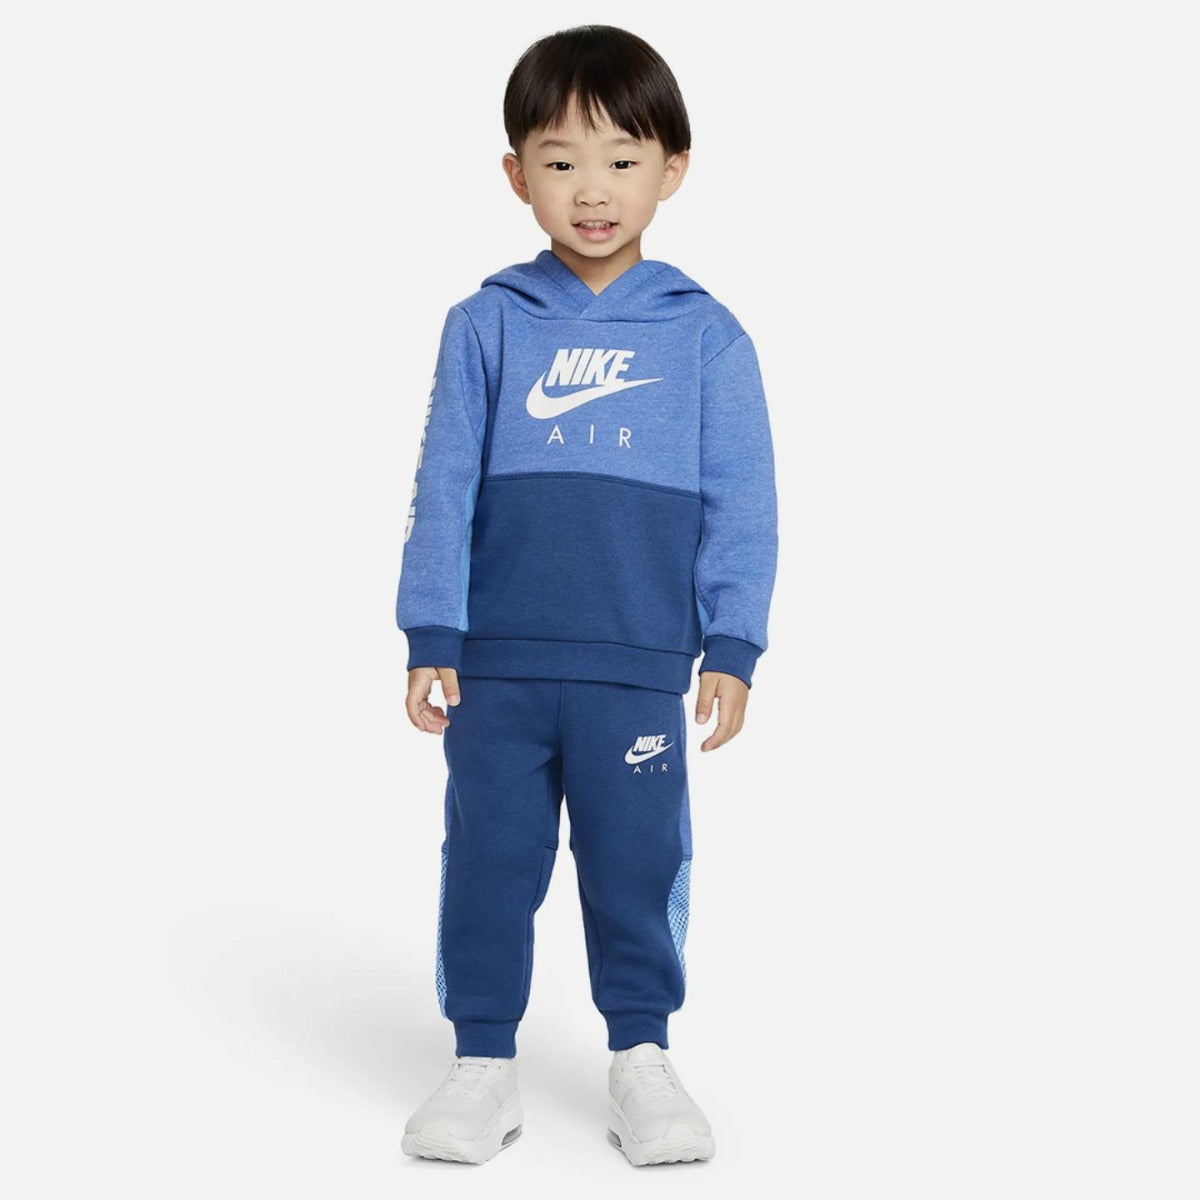 Chándal Nike Bebé Azul